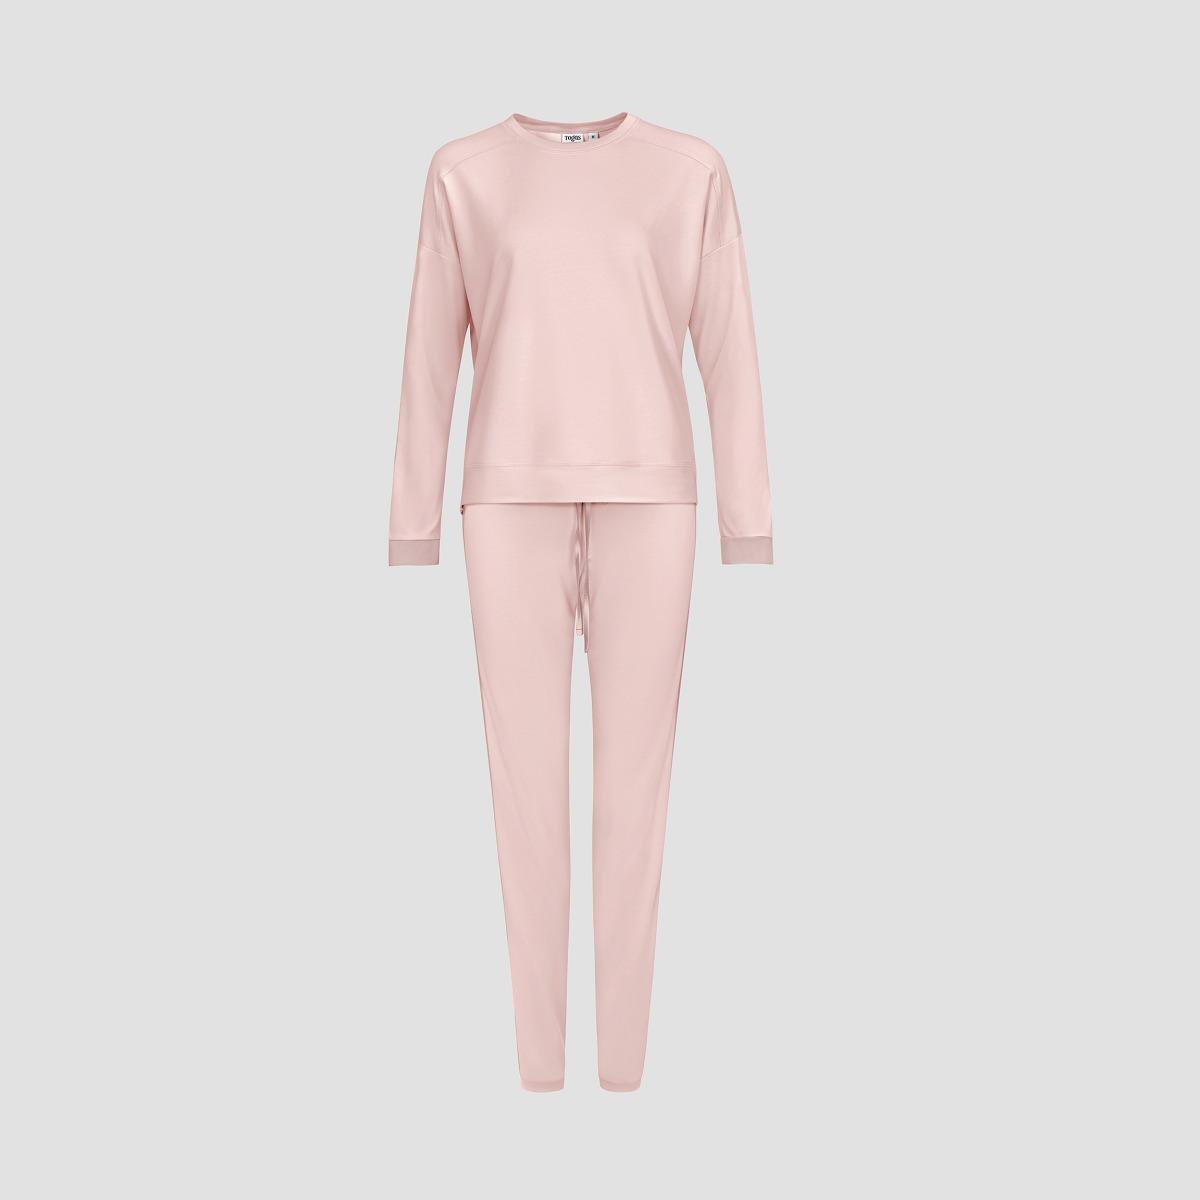 Пижама Togas Рене розовая женская жен пижама георгин серый р 48